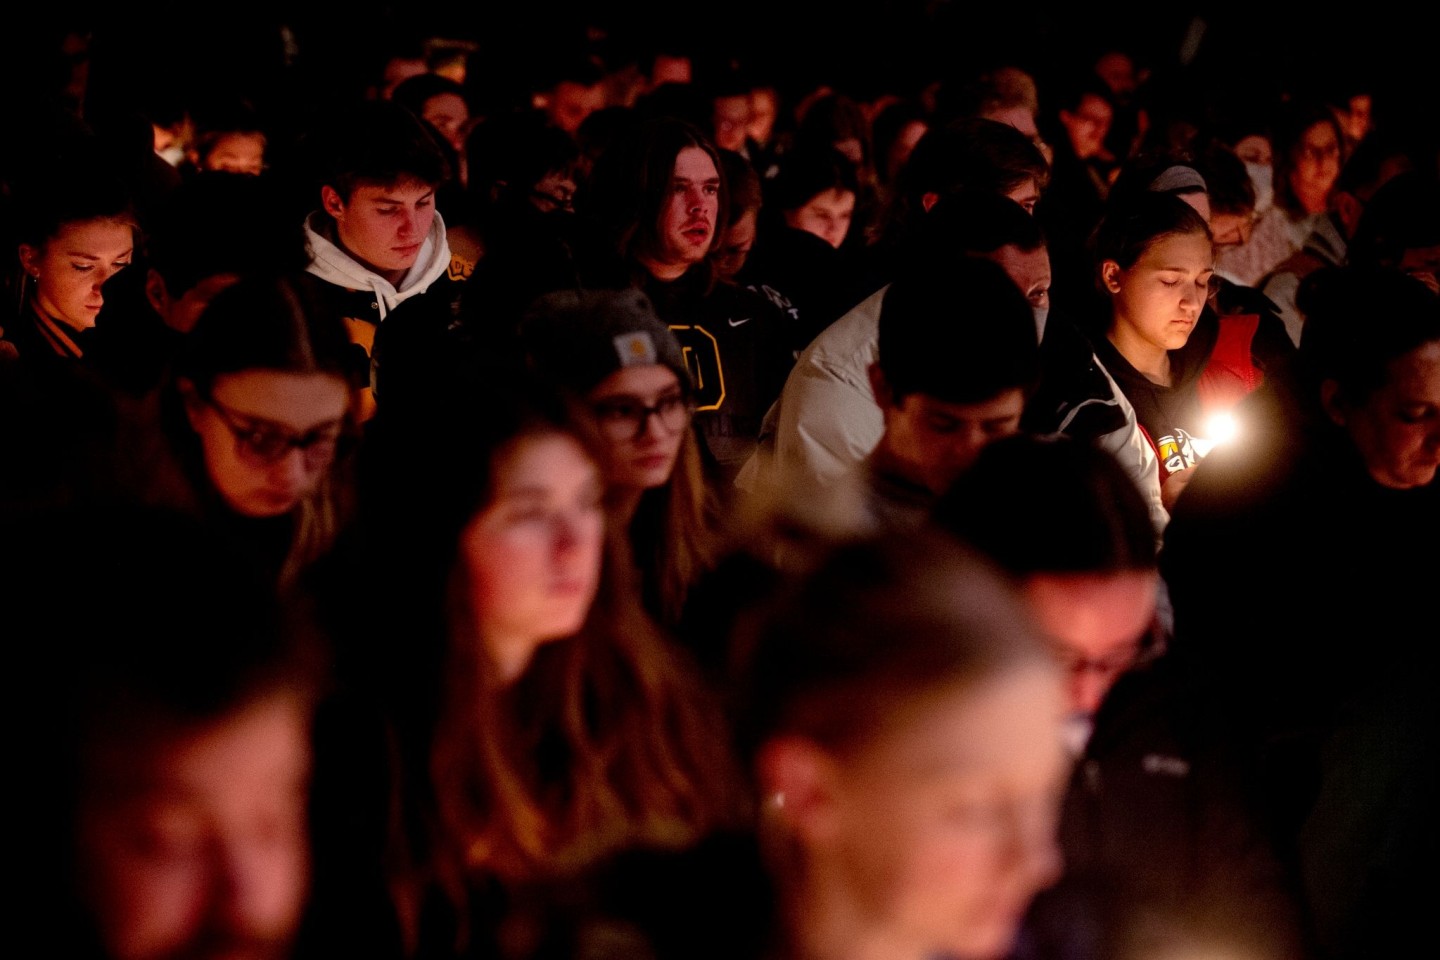 Schülerinnen und Schüler der Oxford High School nehmen an einer Mahnwache für die Opfer des Angriffs des 15-jährigen Schützen teil.